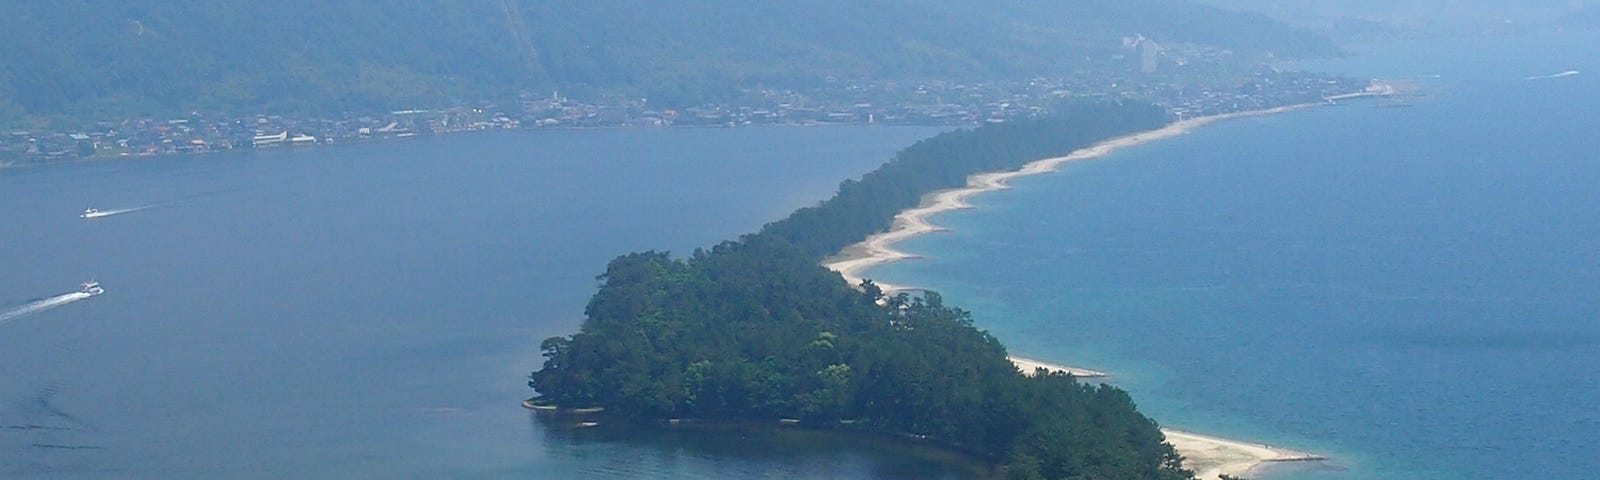 View of amanohashidate